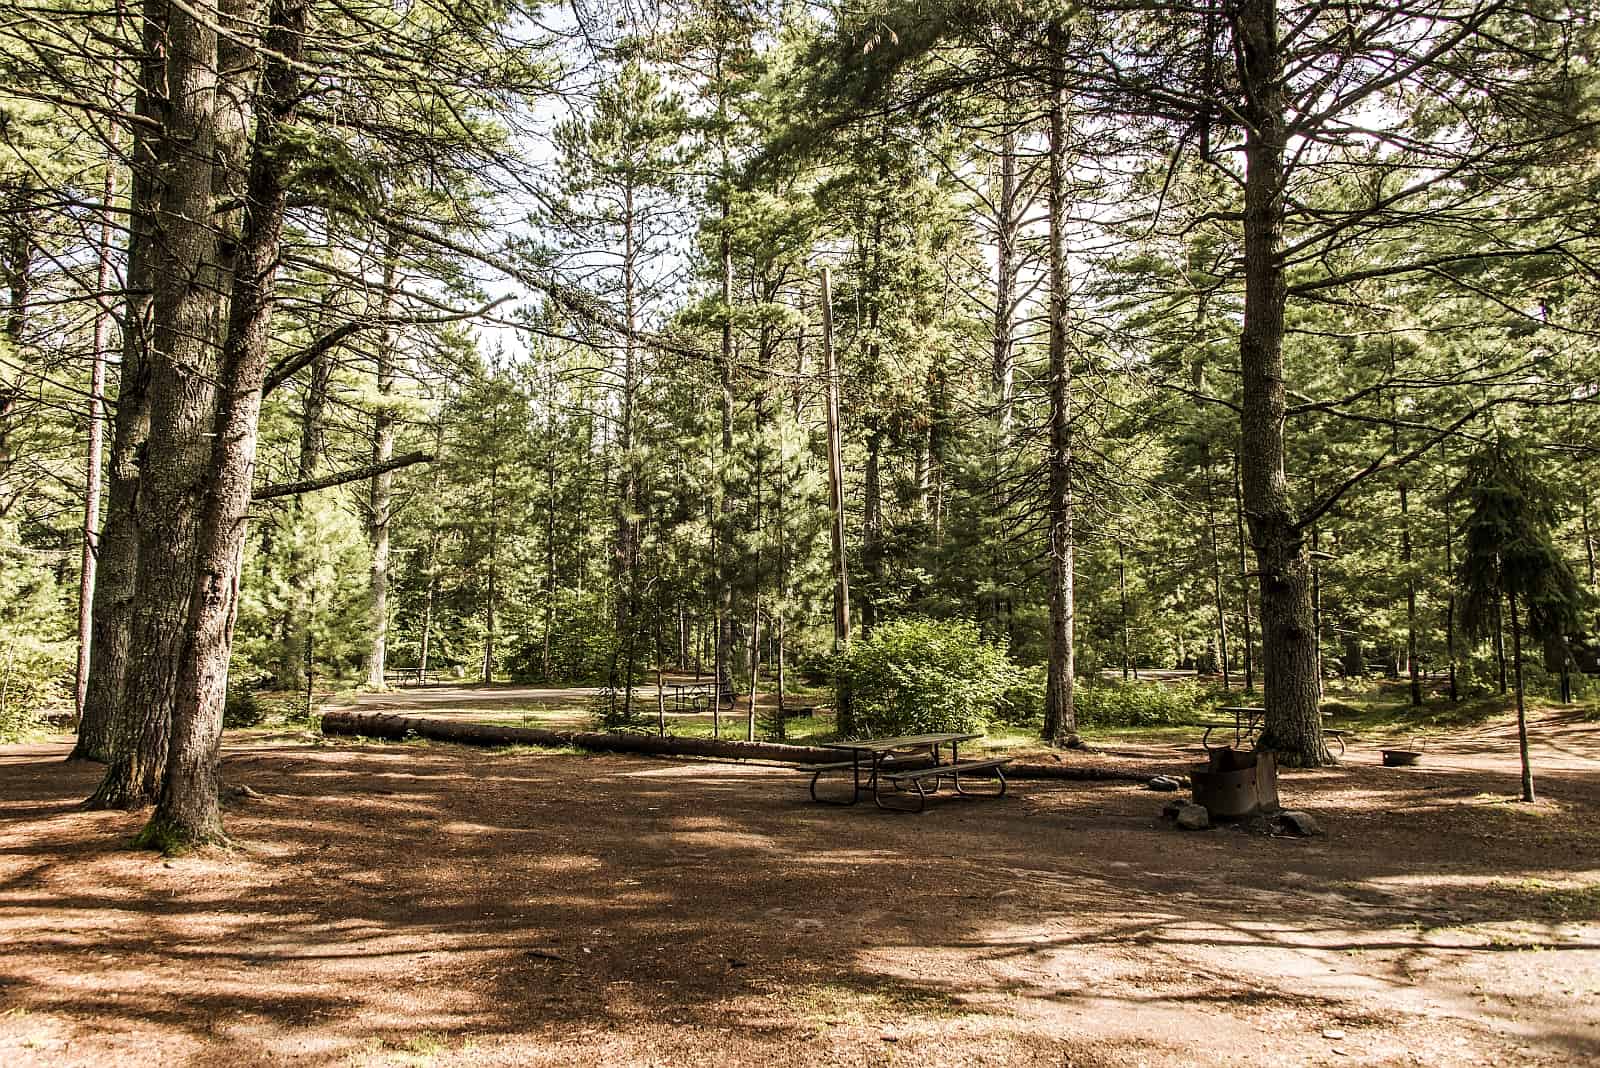 Ein typischer, weitläufiger Campground in einem Provincial Park mit Sitzgelegenheit und Feuerstelle.